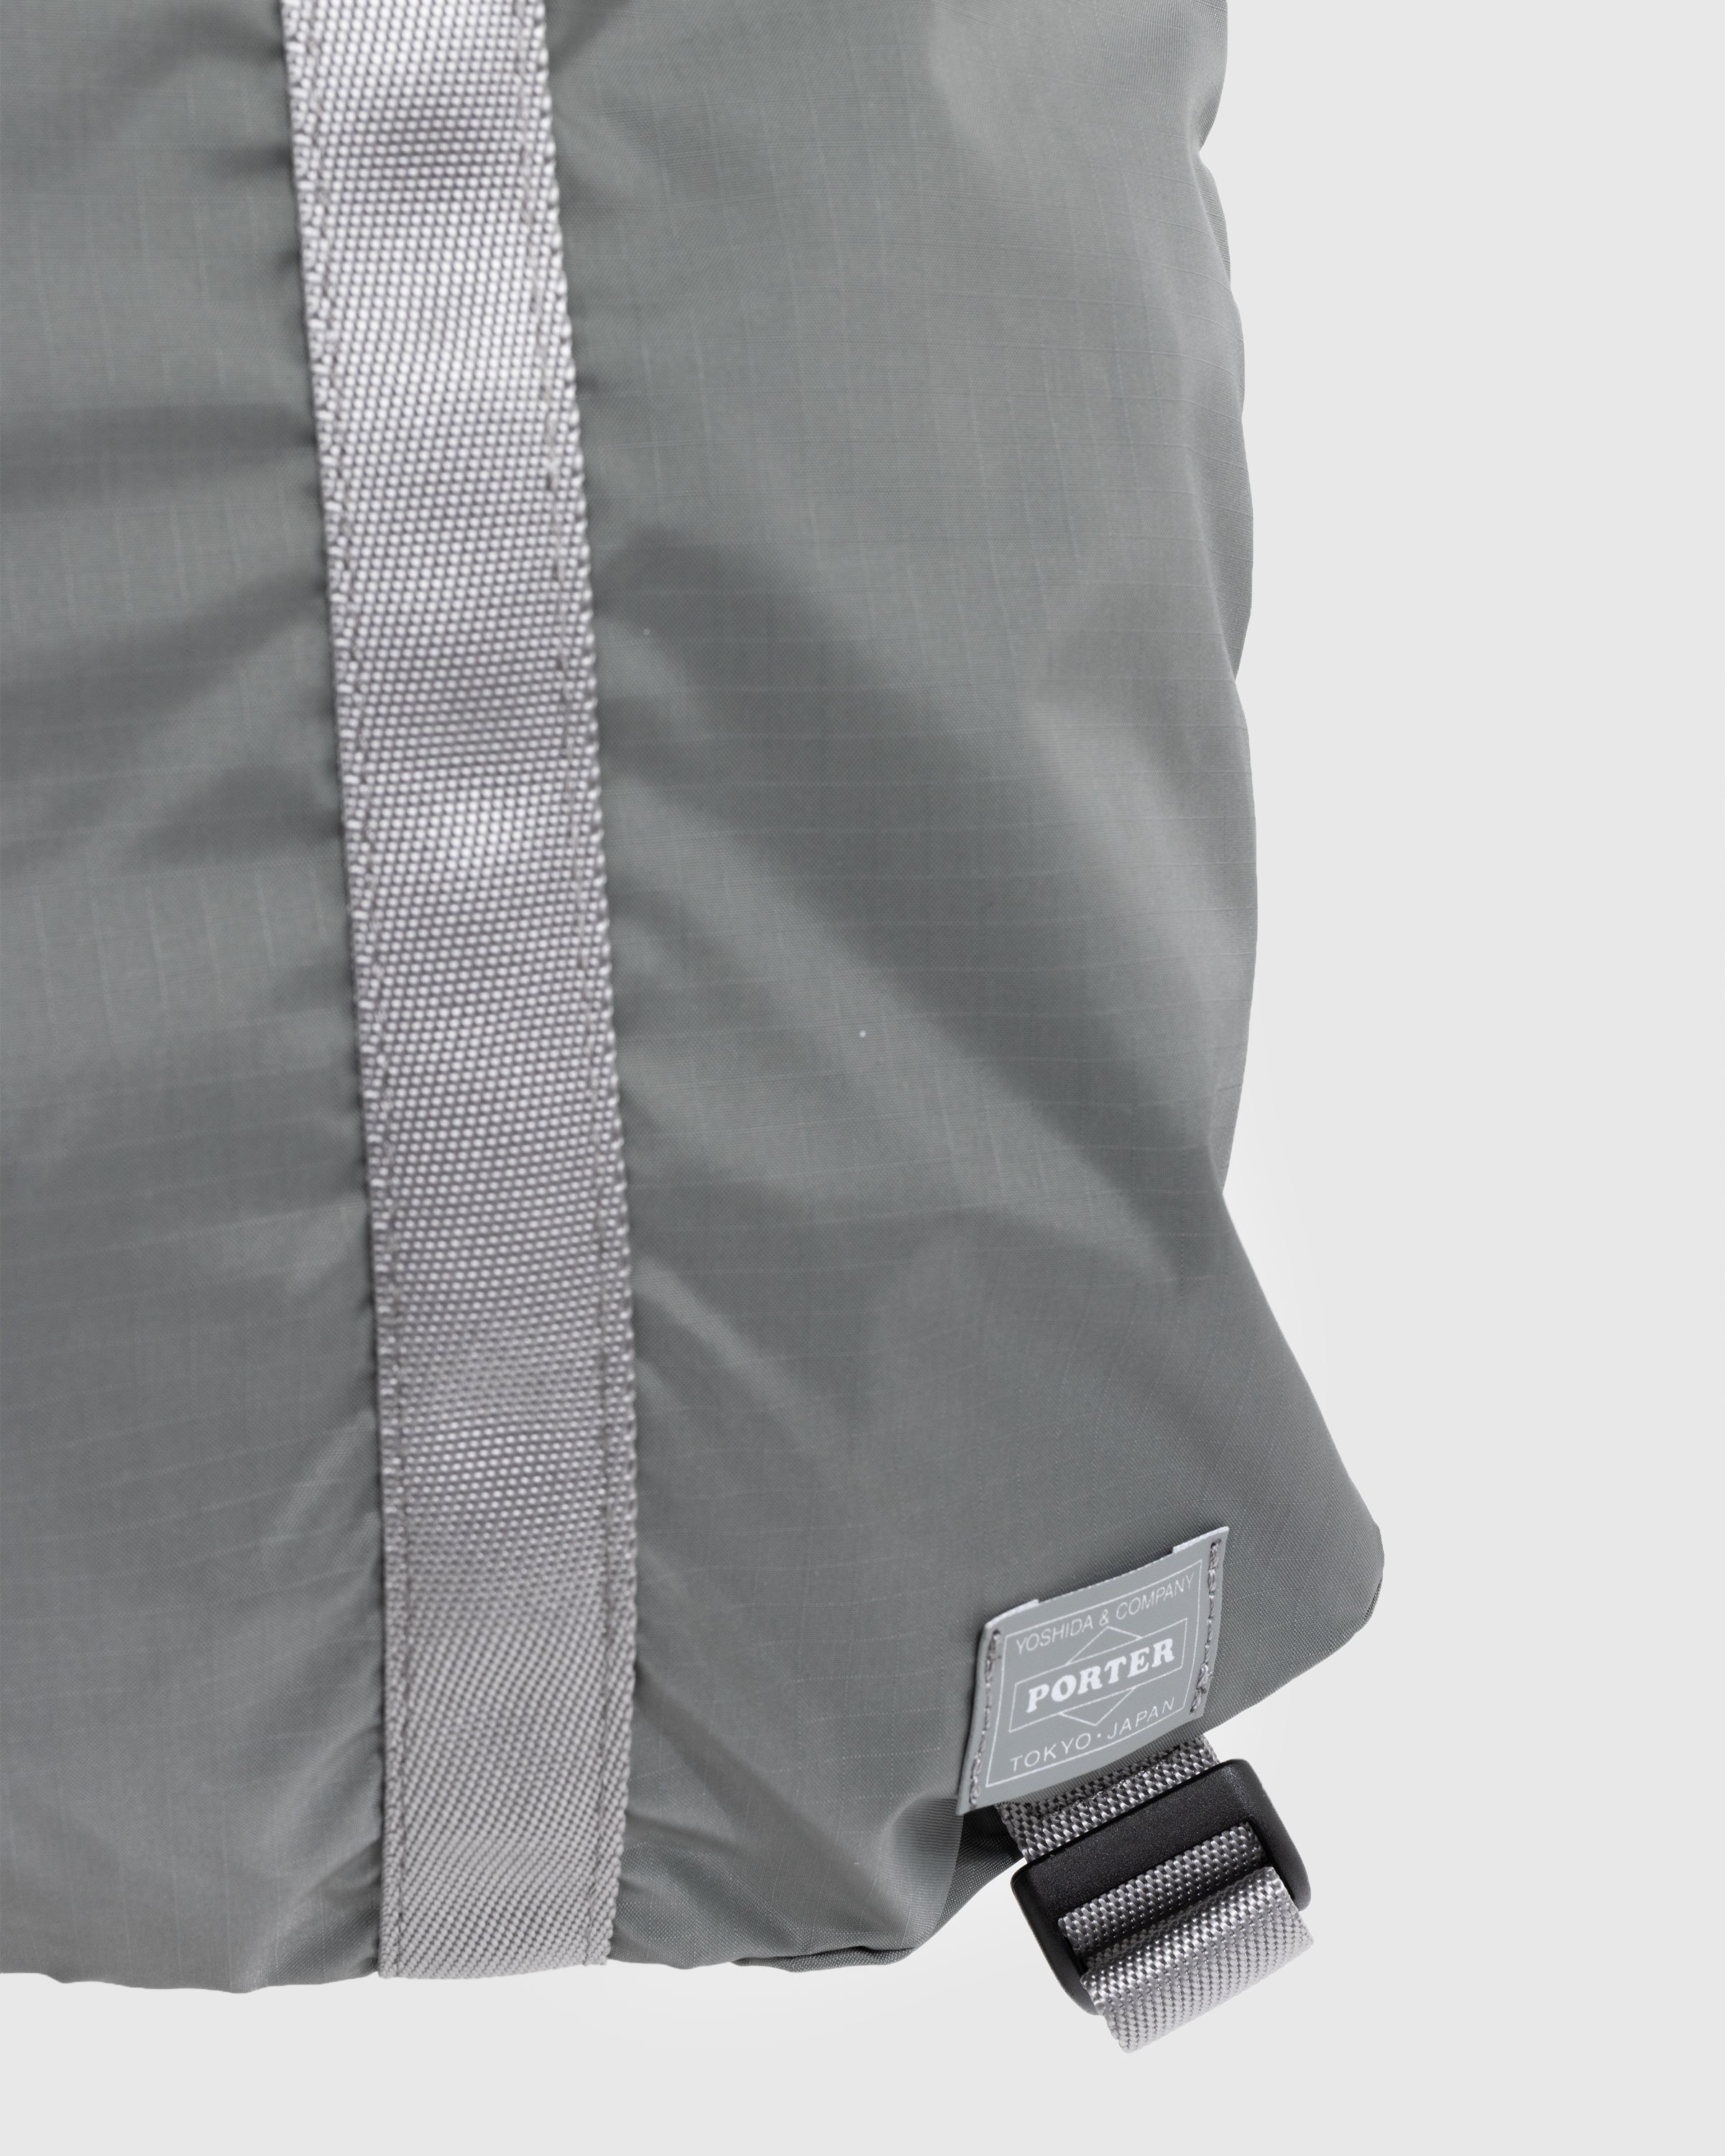 Porter-Yoshida & Co. - Flex 2-Way Tote Bag Grey - Accessories - Grey - Image 5